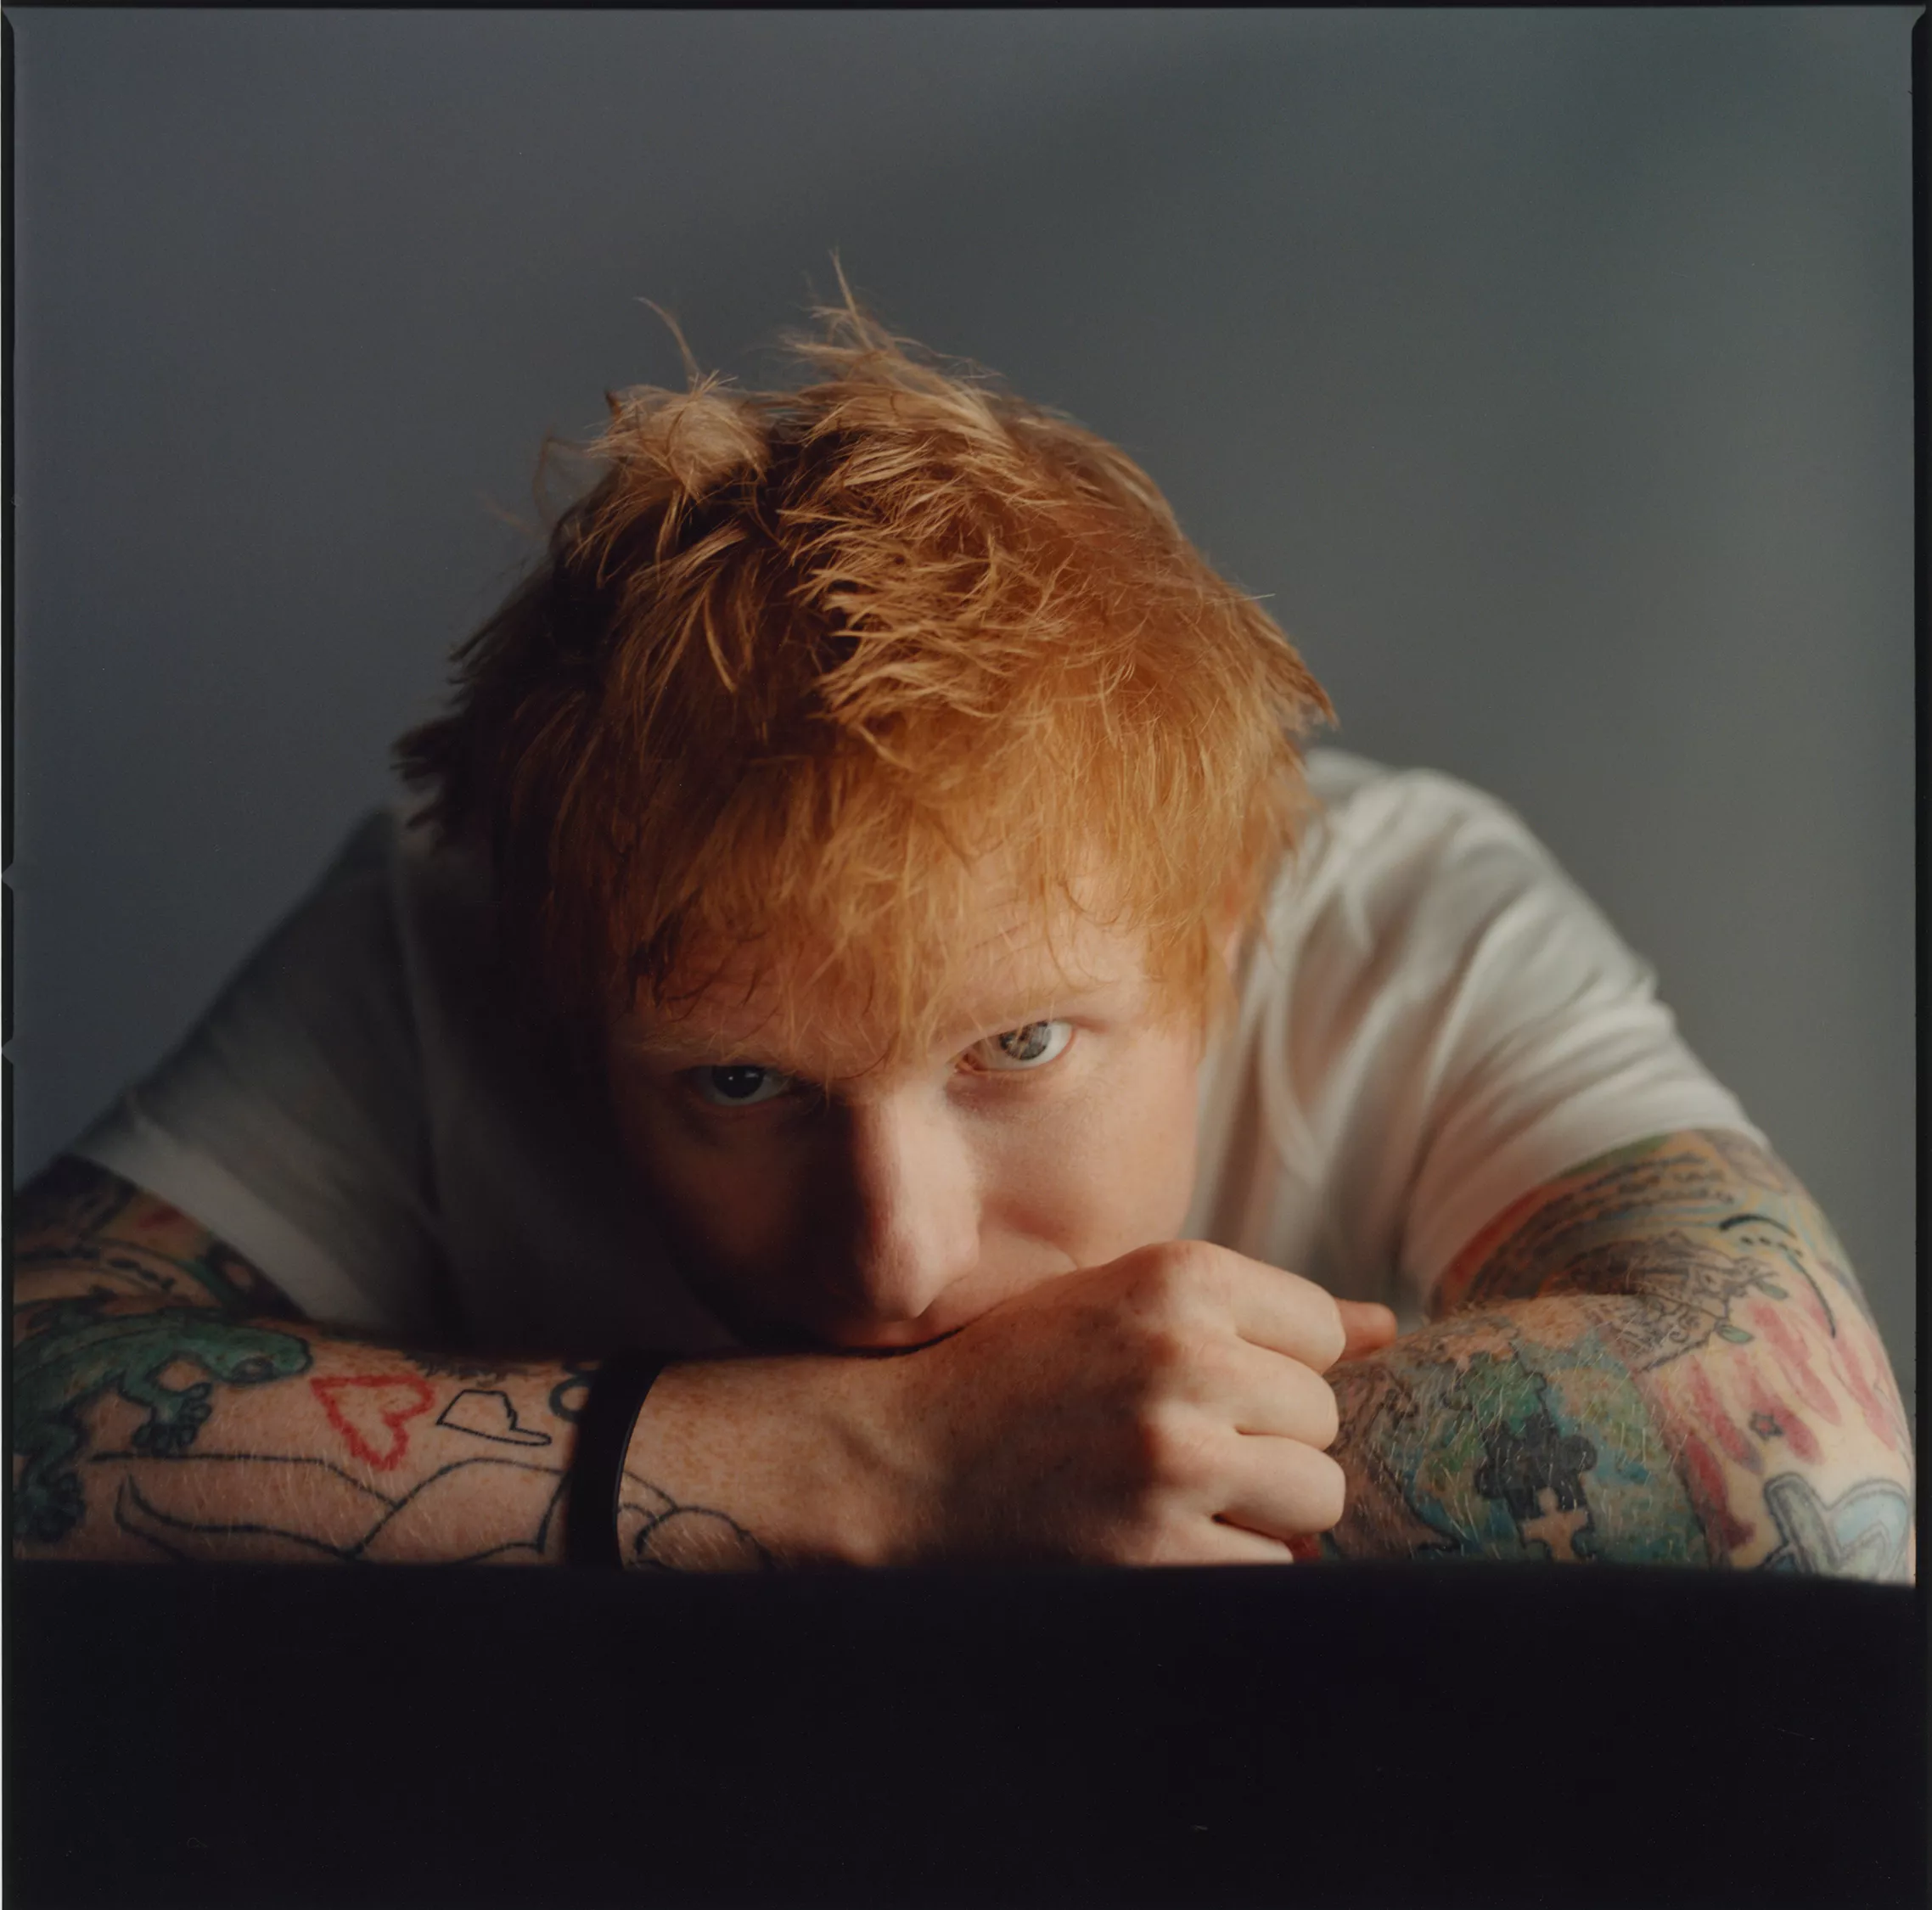 Ed Sheeran testade positivt för corona – strax innan hans nya album släpps